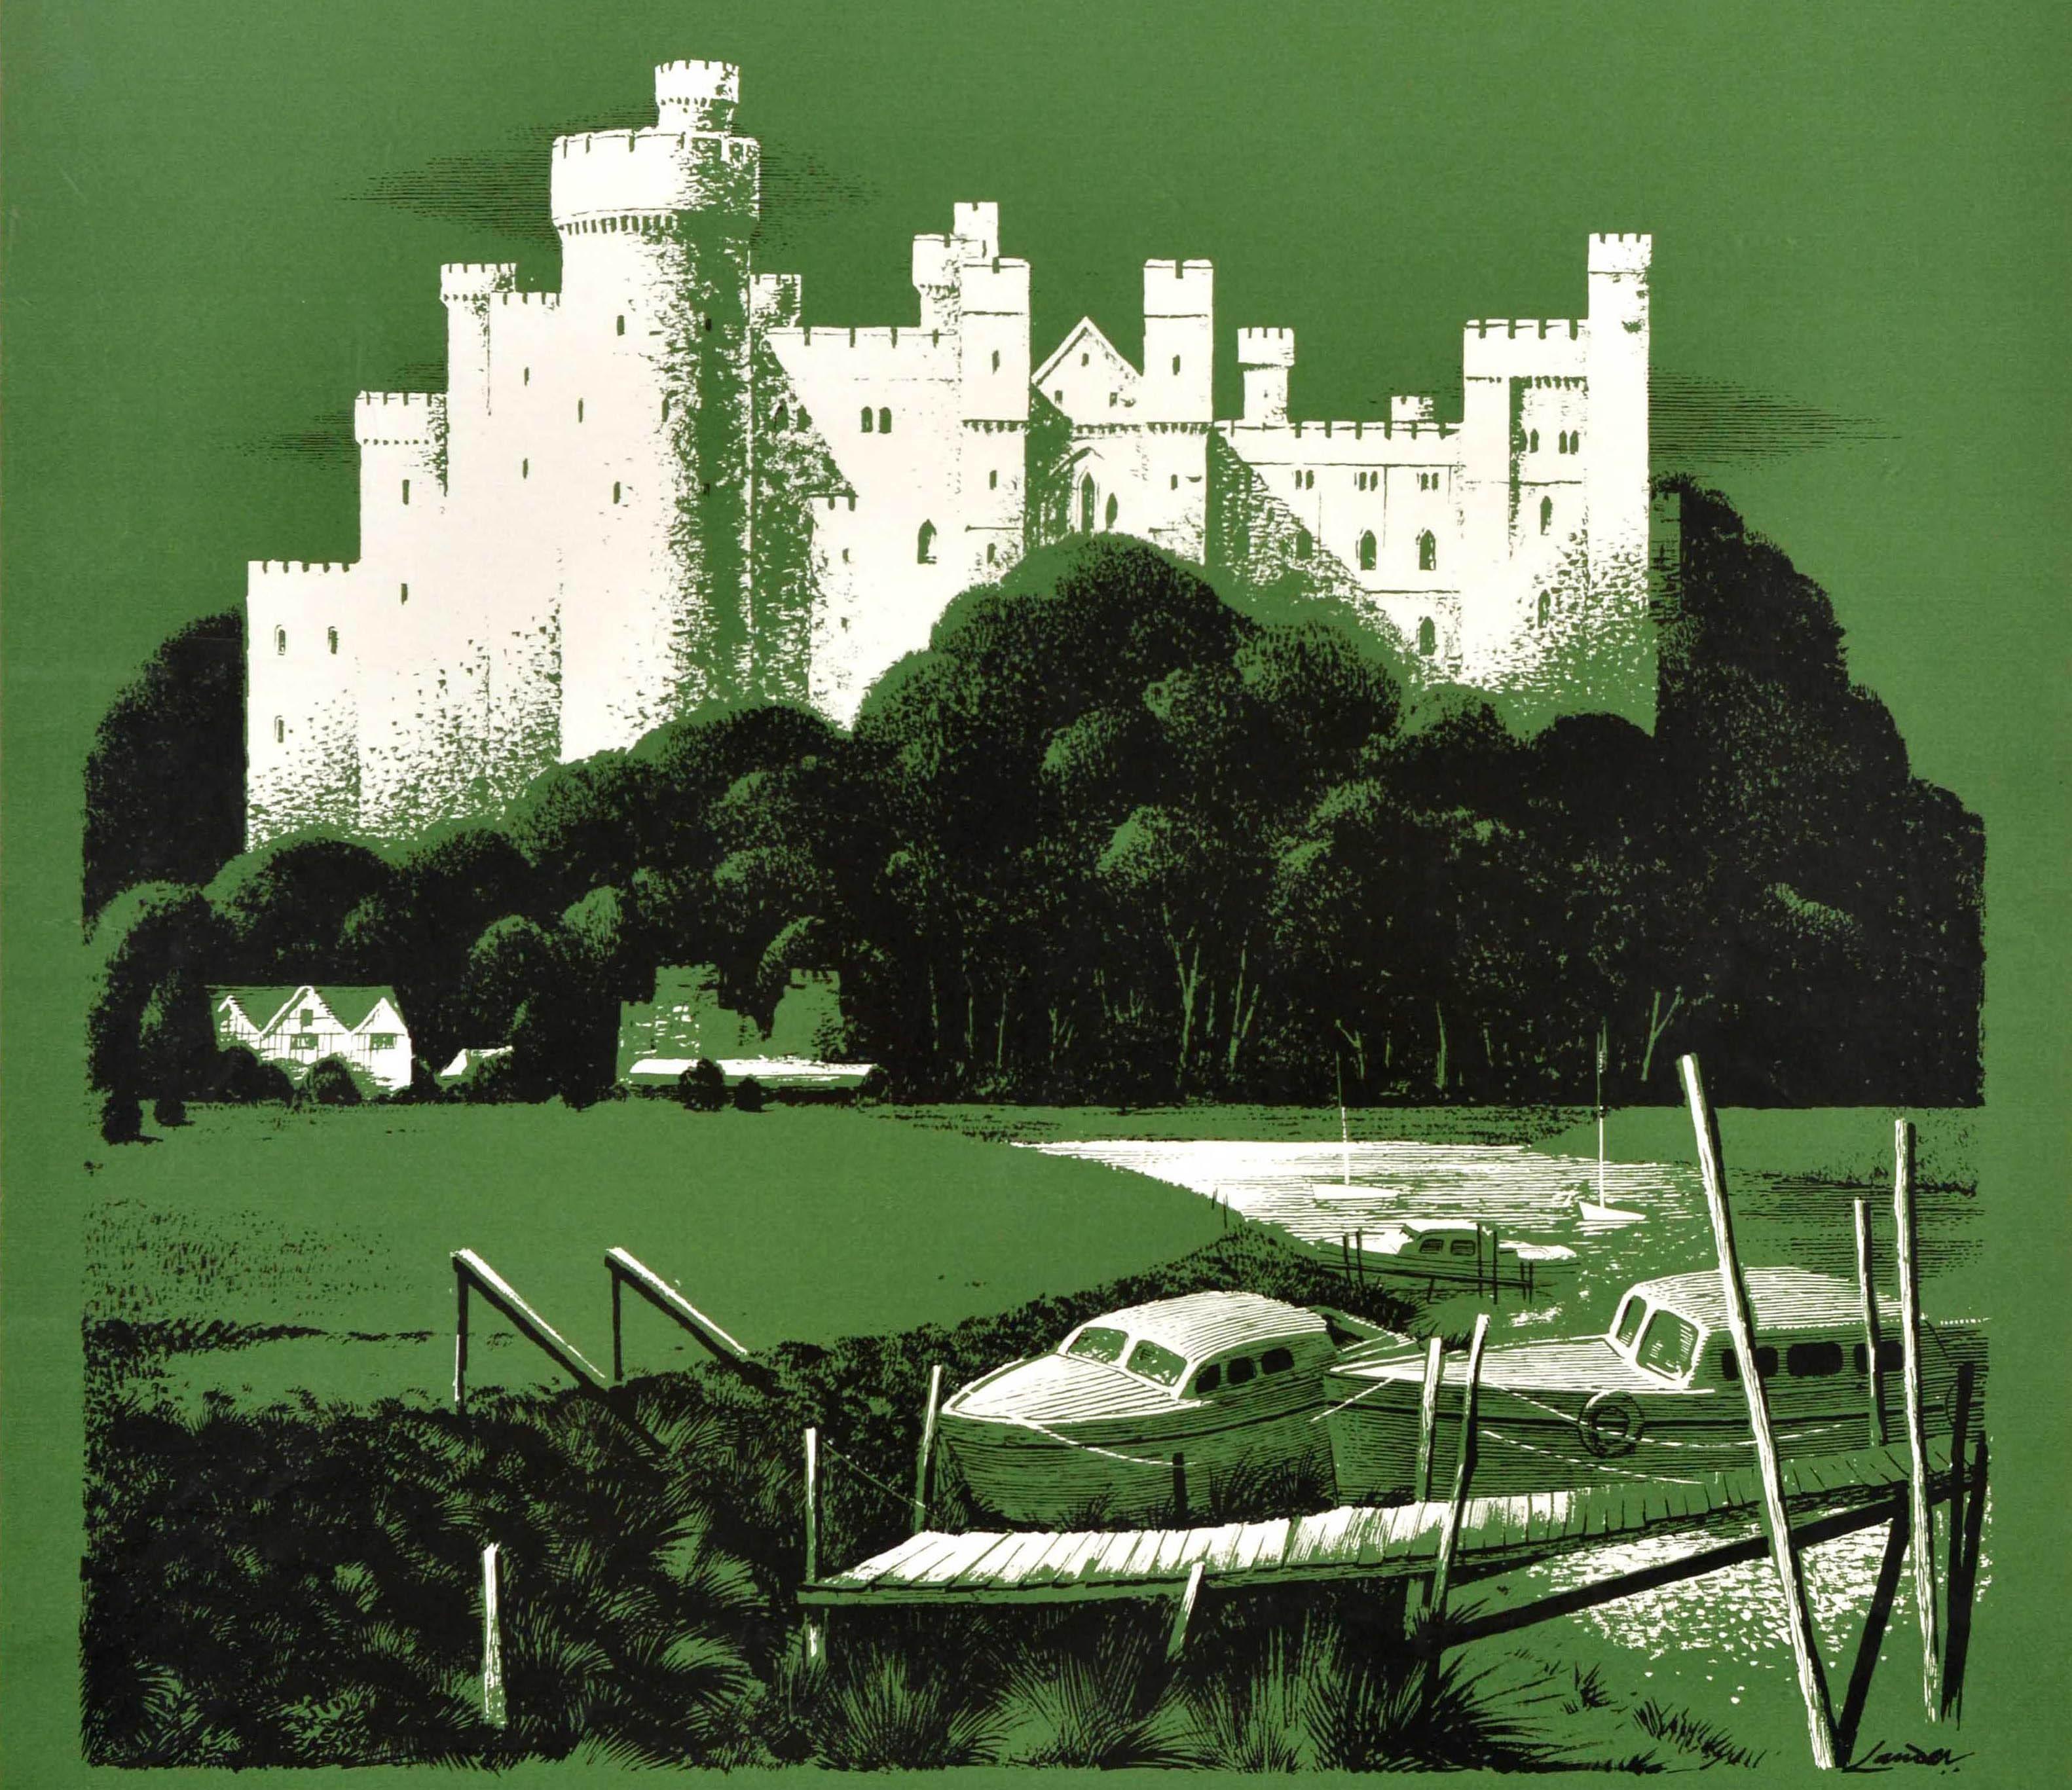 Cartel original de época para viajes en tren - Visita el castillo de Arundel - con ilustraciones del notable artista comercial y diseñador de carteles Reginald Montague Lander (1913-1980) que representan el histórico castillo de Arundel, del siglo